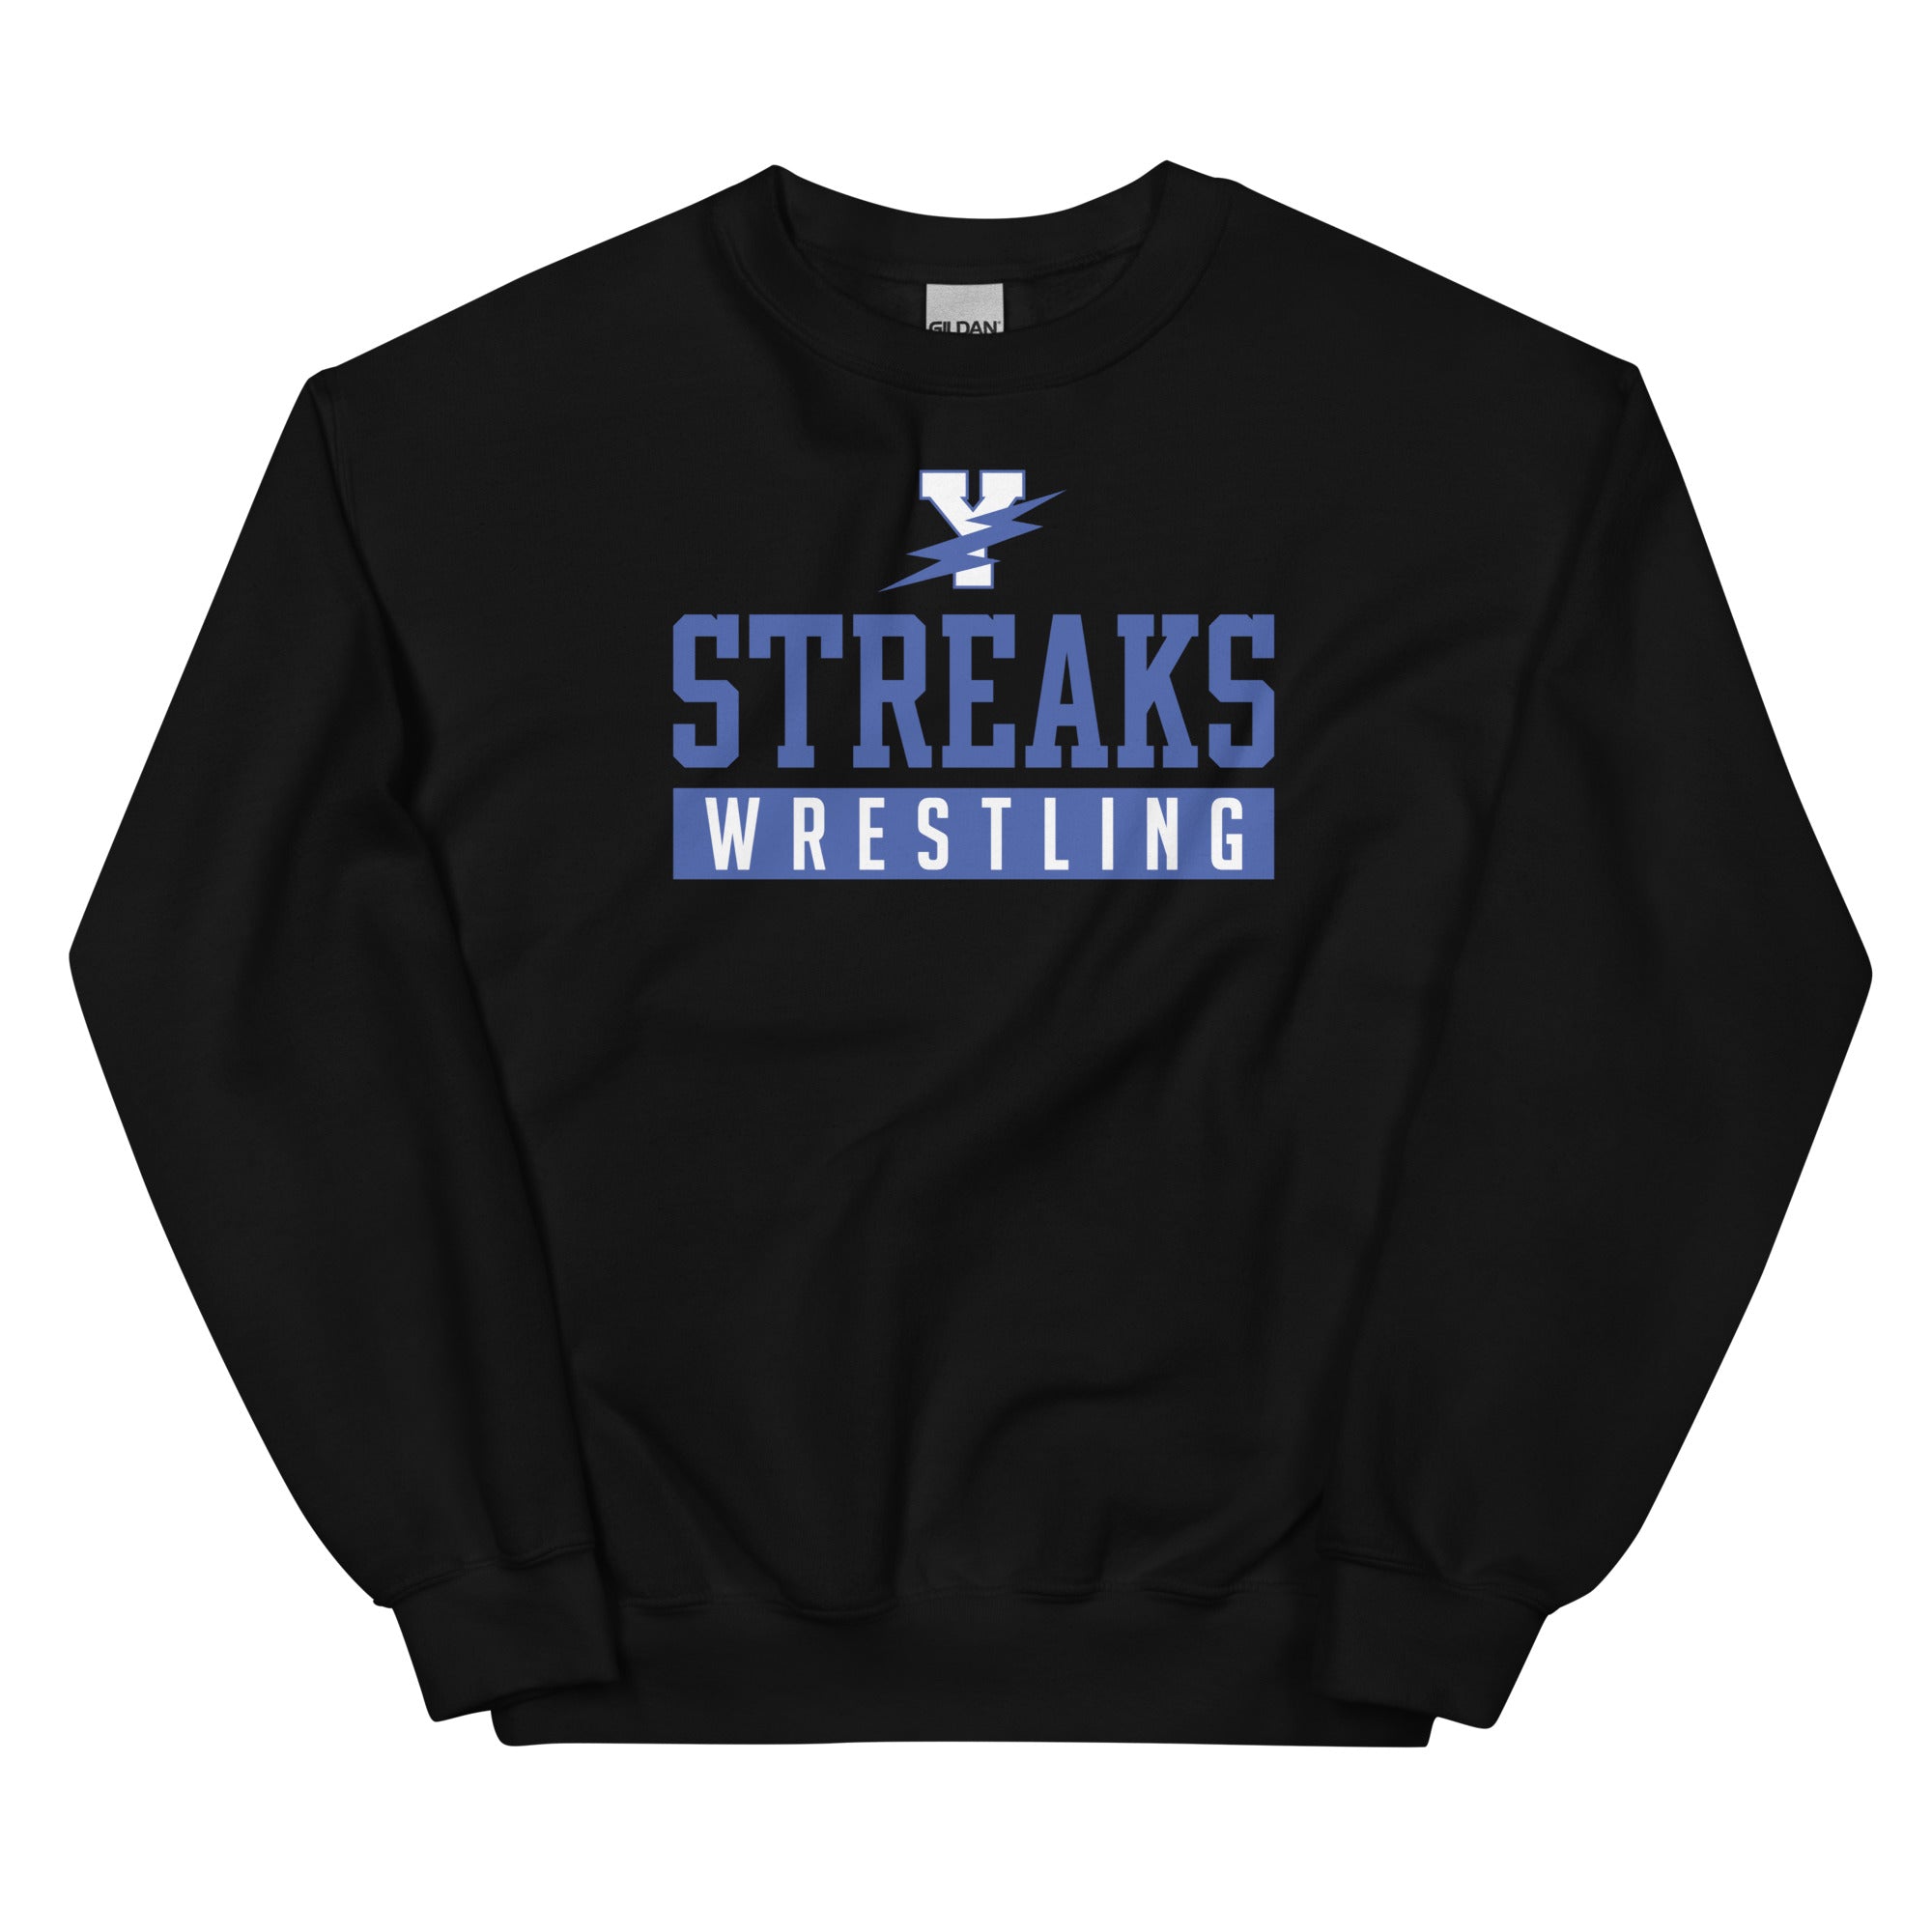 Streaks Wrestling  Unisex Crew Neck Sweatshirt